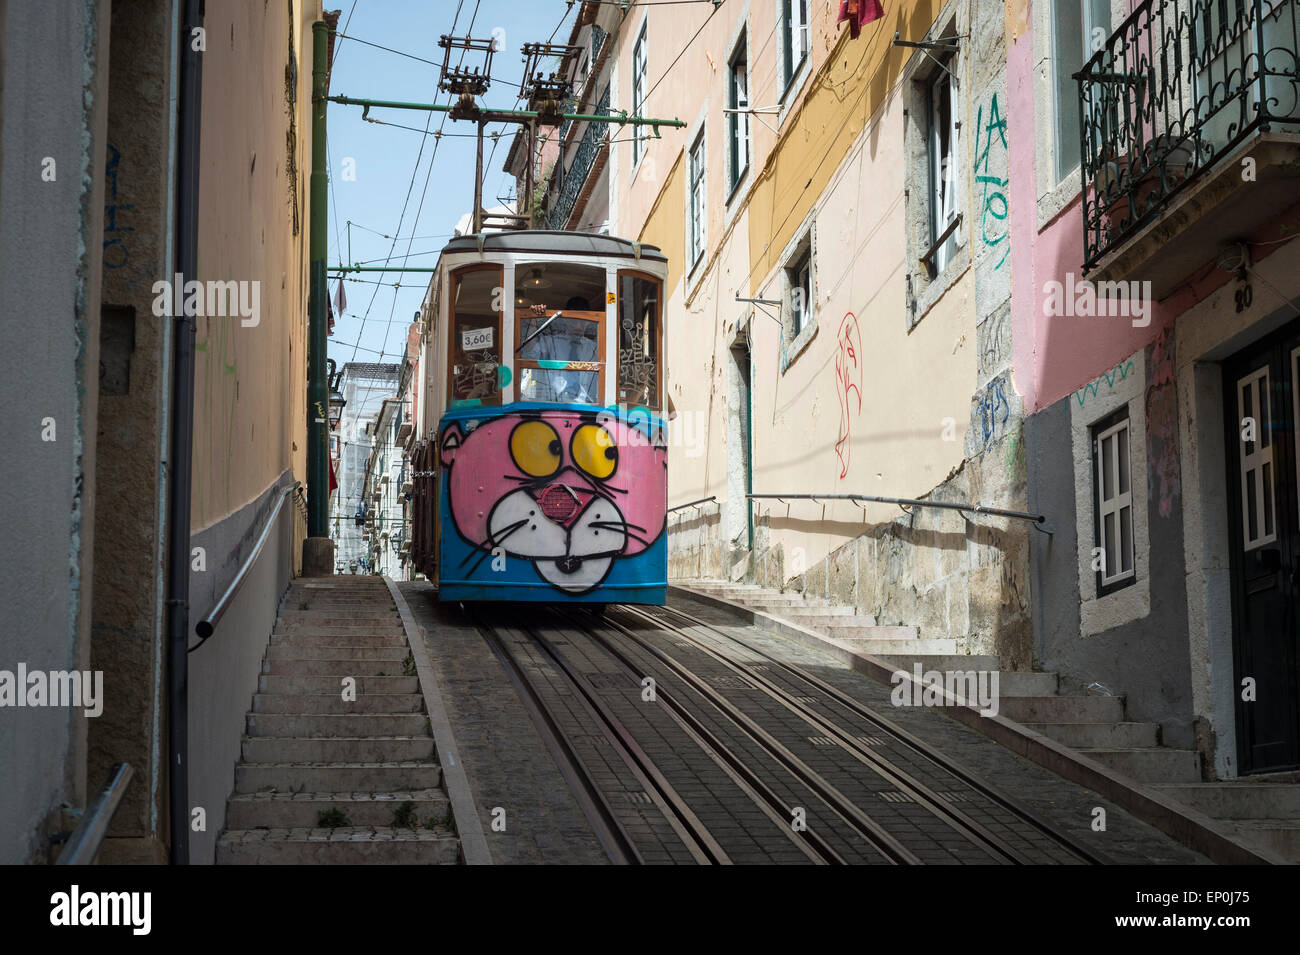 elevador da bica tram system in Bairro Alto, Lisbon Portugal. Stock Photo